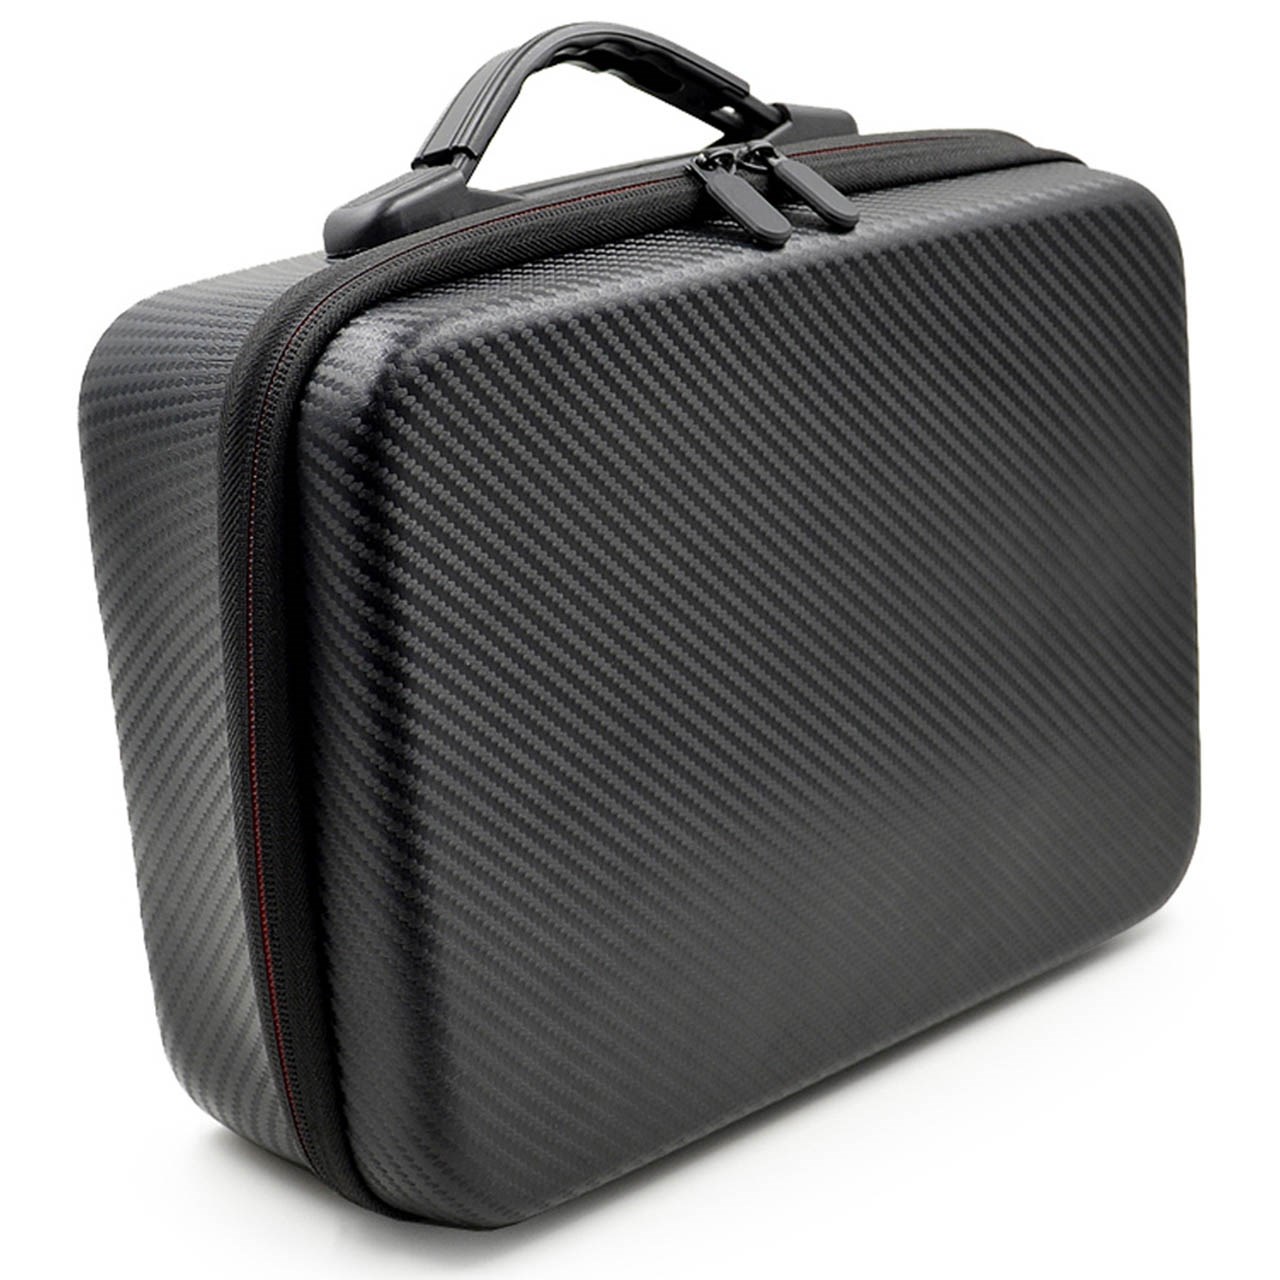 کیف دوربین مدل Carrying مناسب برای پهپاد DJI Spark